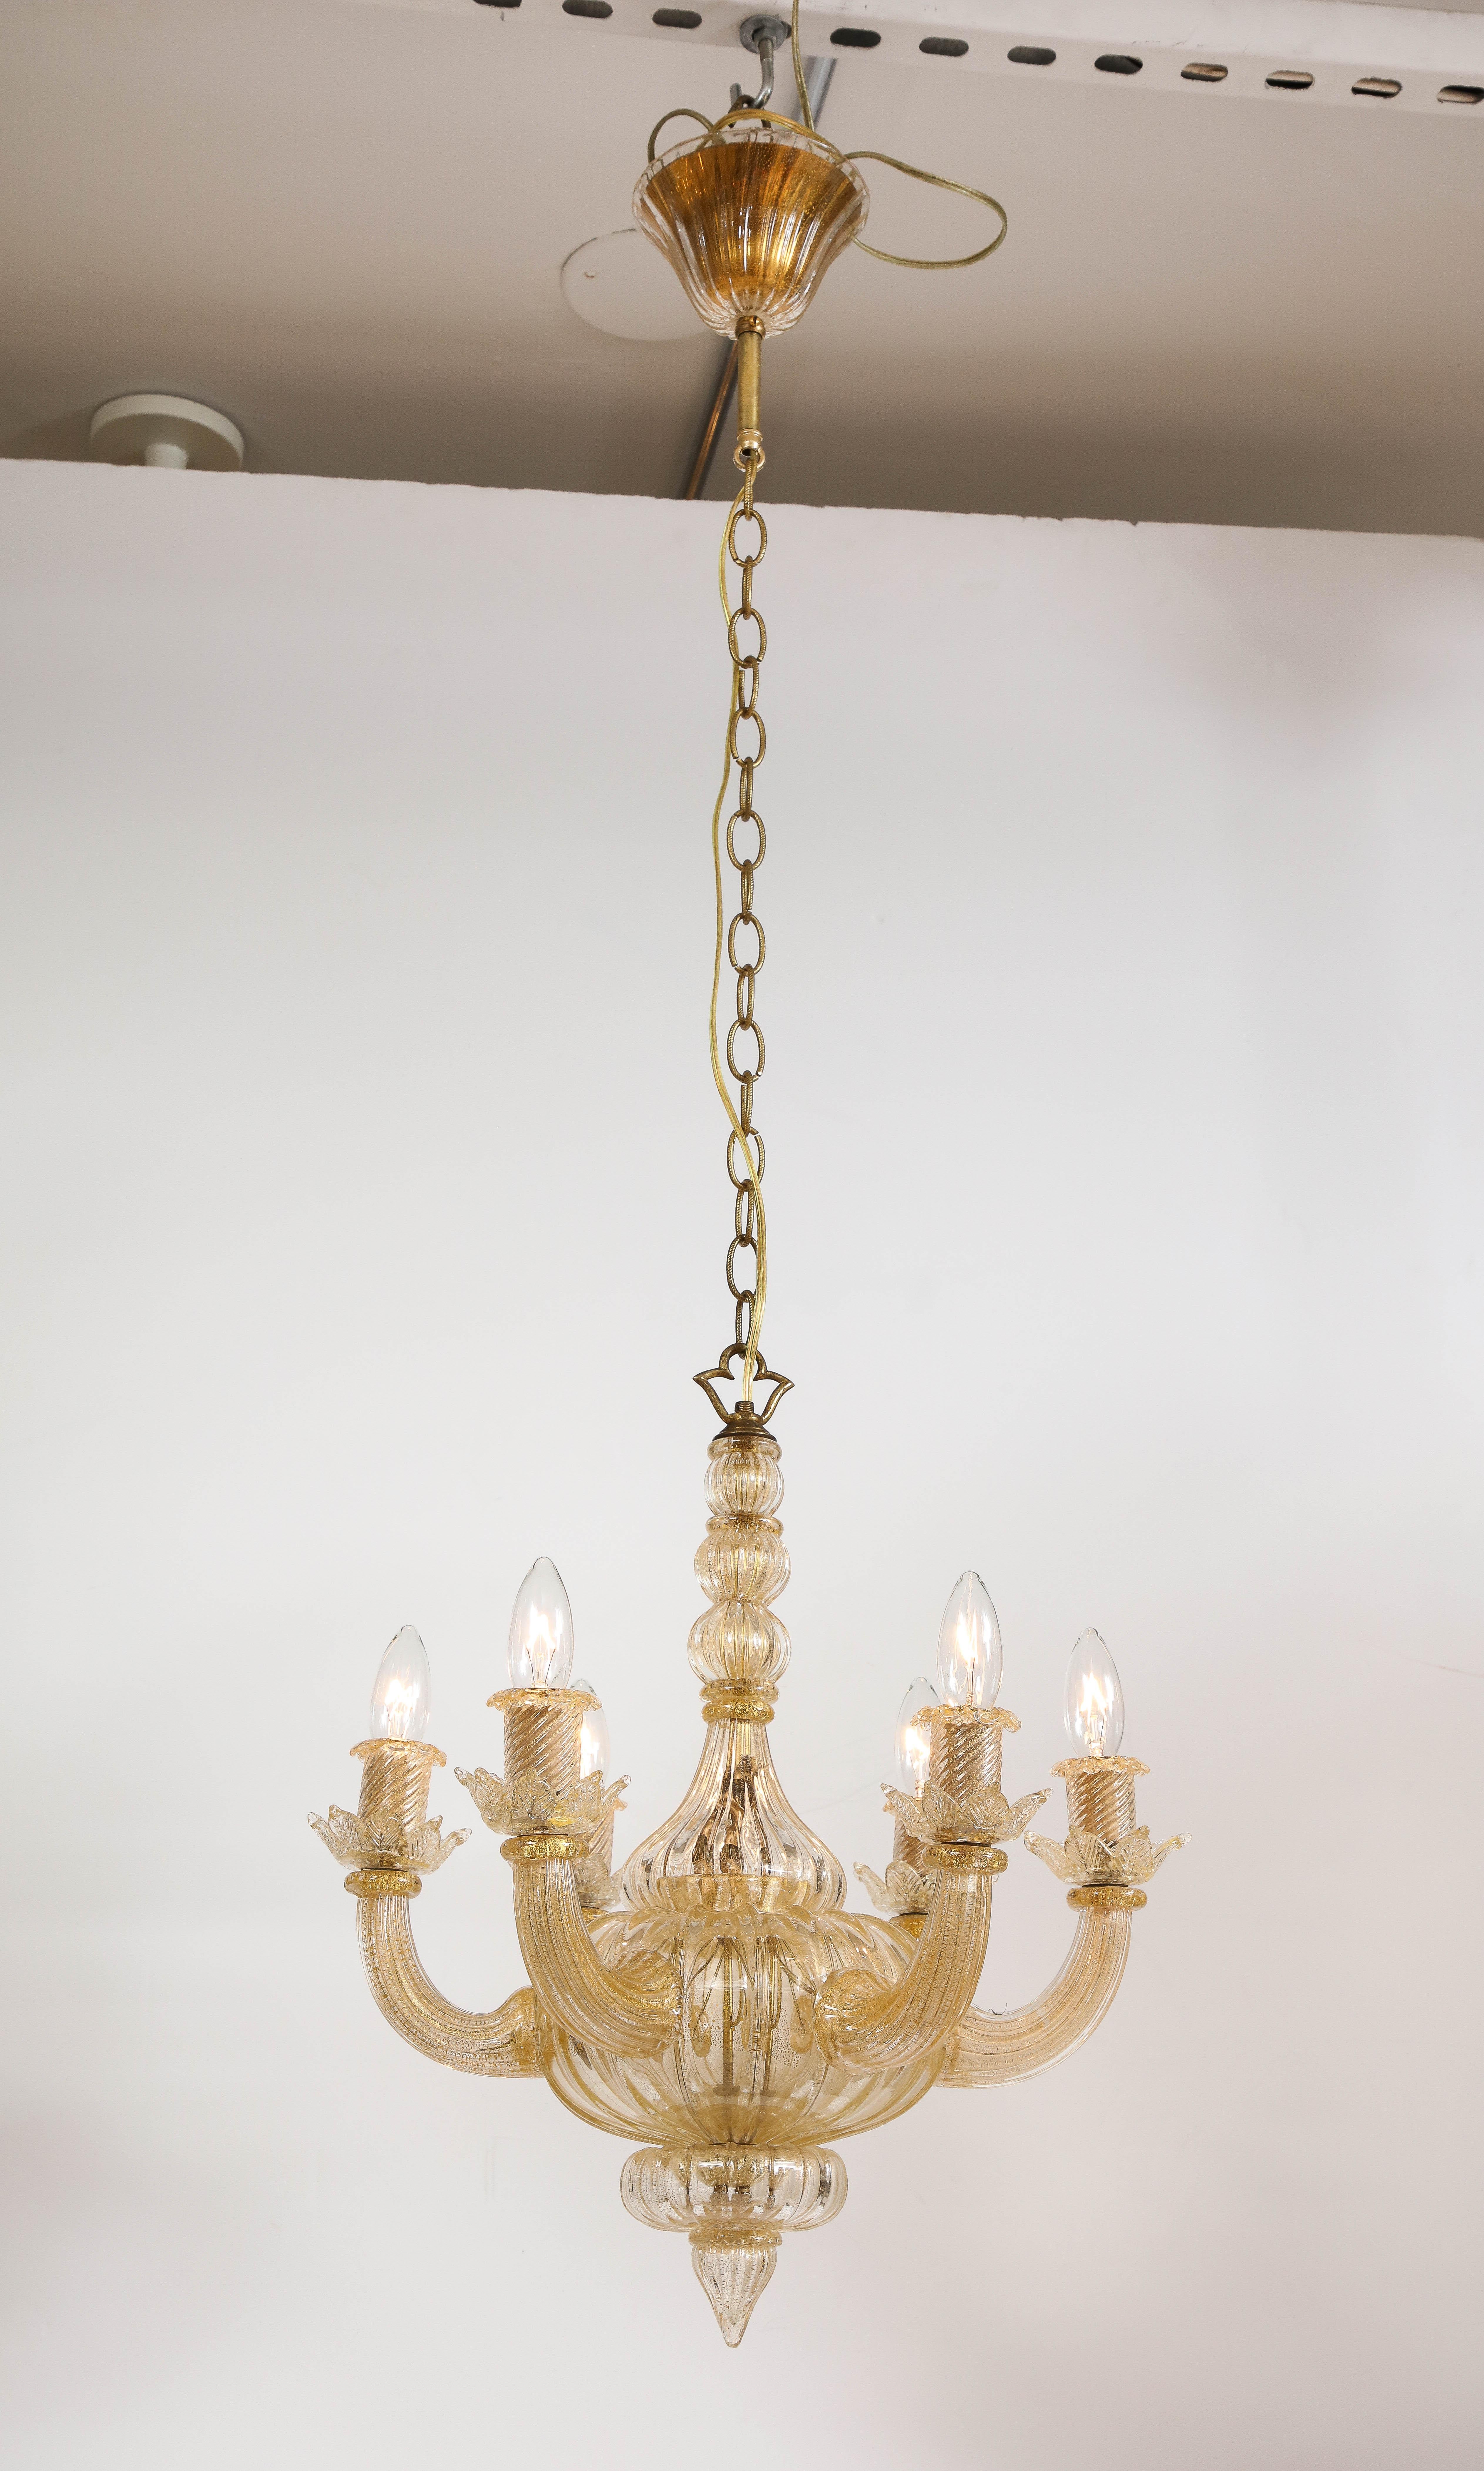 Ein mundgeblasener Murano-Kronleuchter aus der Mitte des Jahrhunderts aus halb-opakem mundgeblasenem Murano-Goldglas in einem eleganten neoklassizistischen Design mit sechs geschwungenen, nach oben gerichteten Armen, die mit gläsernen Kerzenhaltern